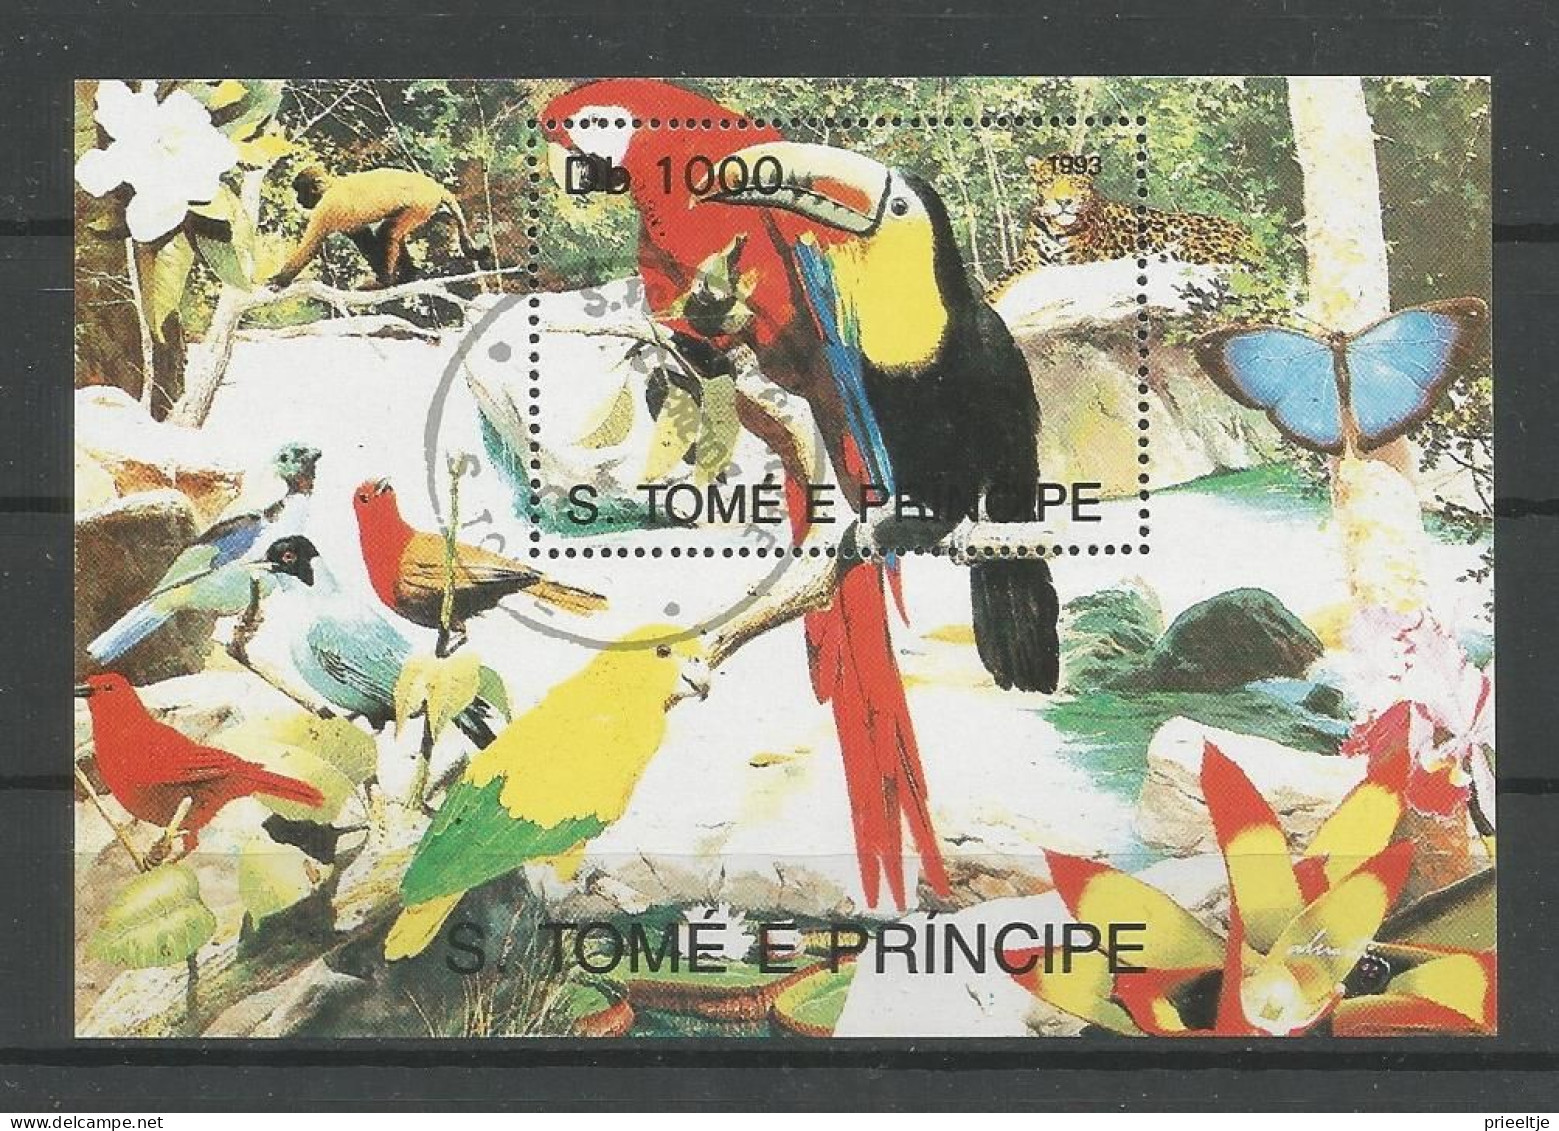 St Tome E Principe 1993 Birds S/S  Y.T. BF 141 (0) - Sao Tome And Principe